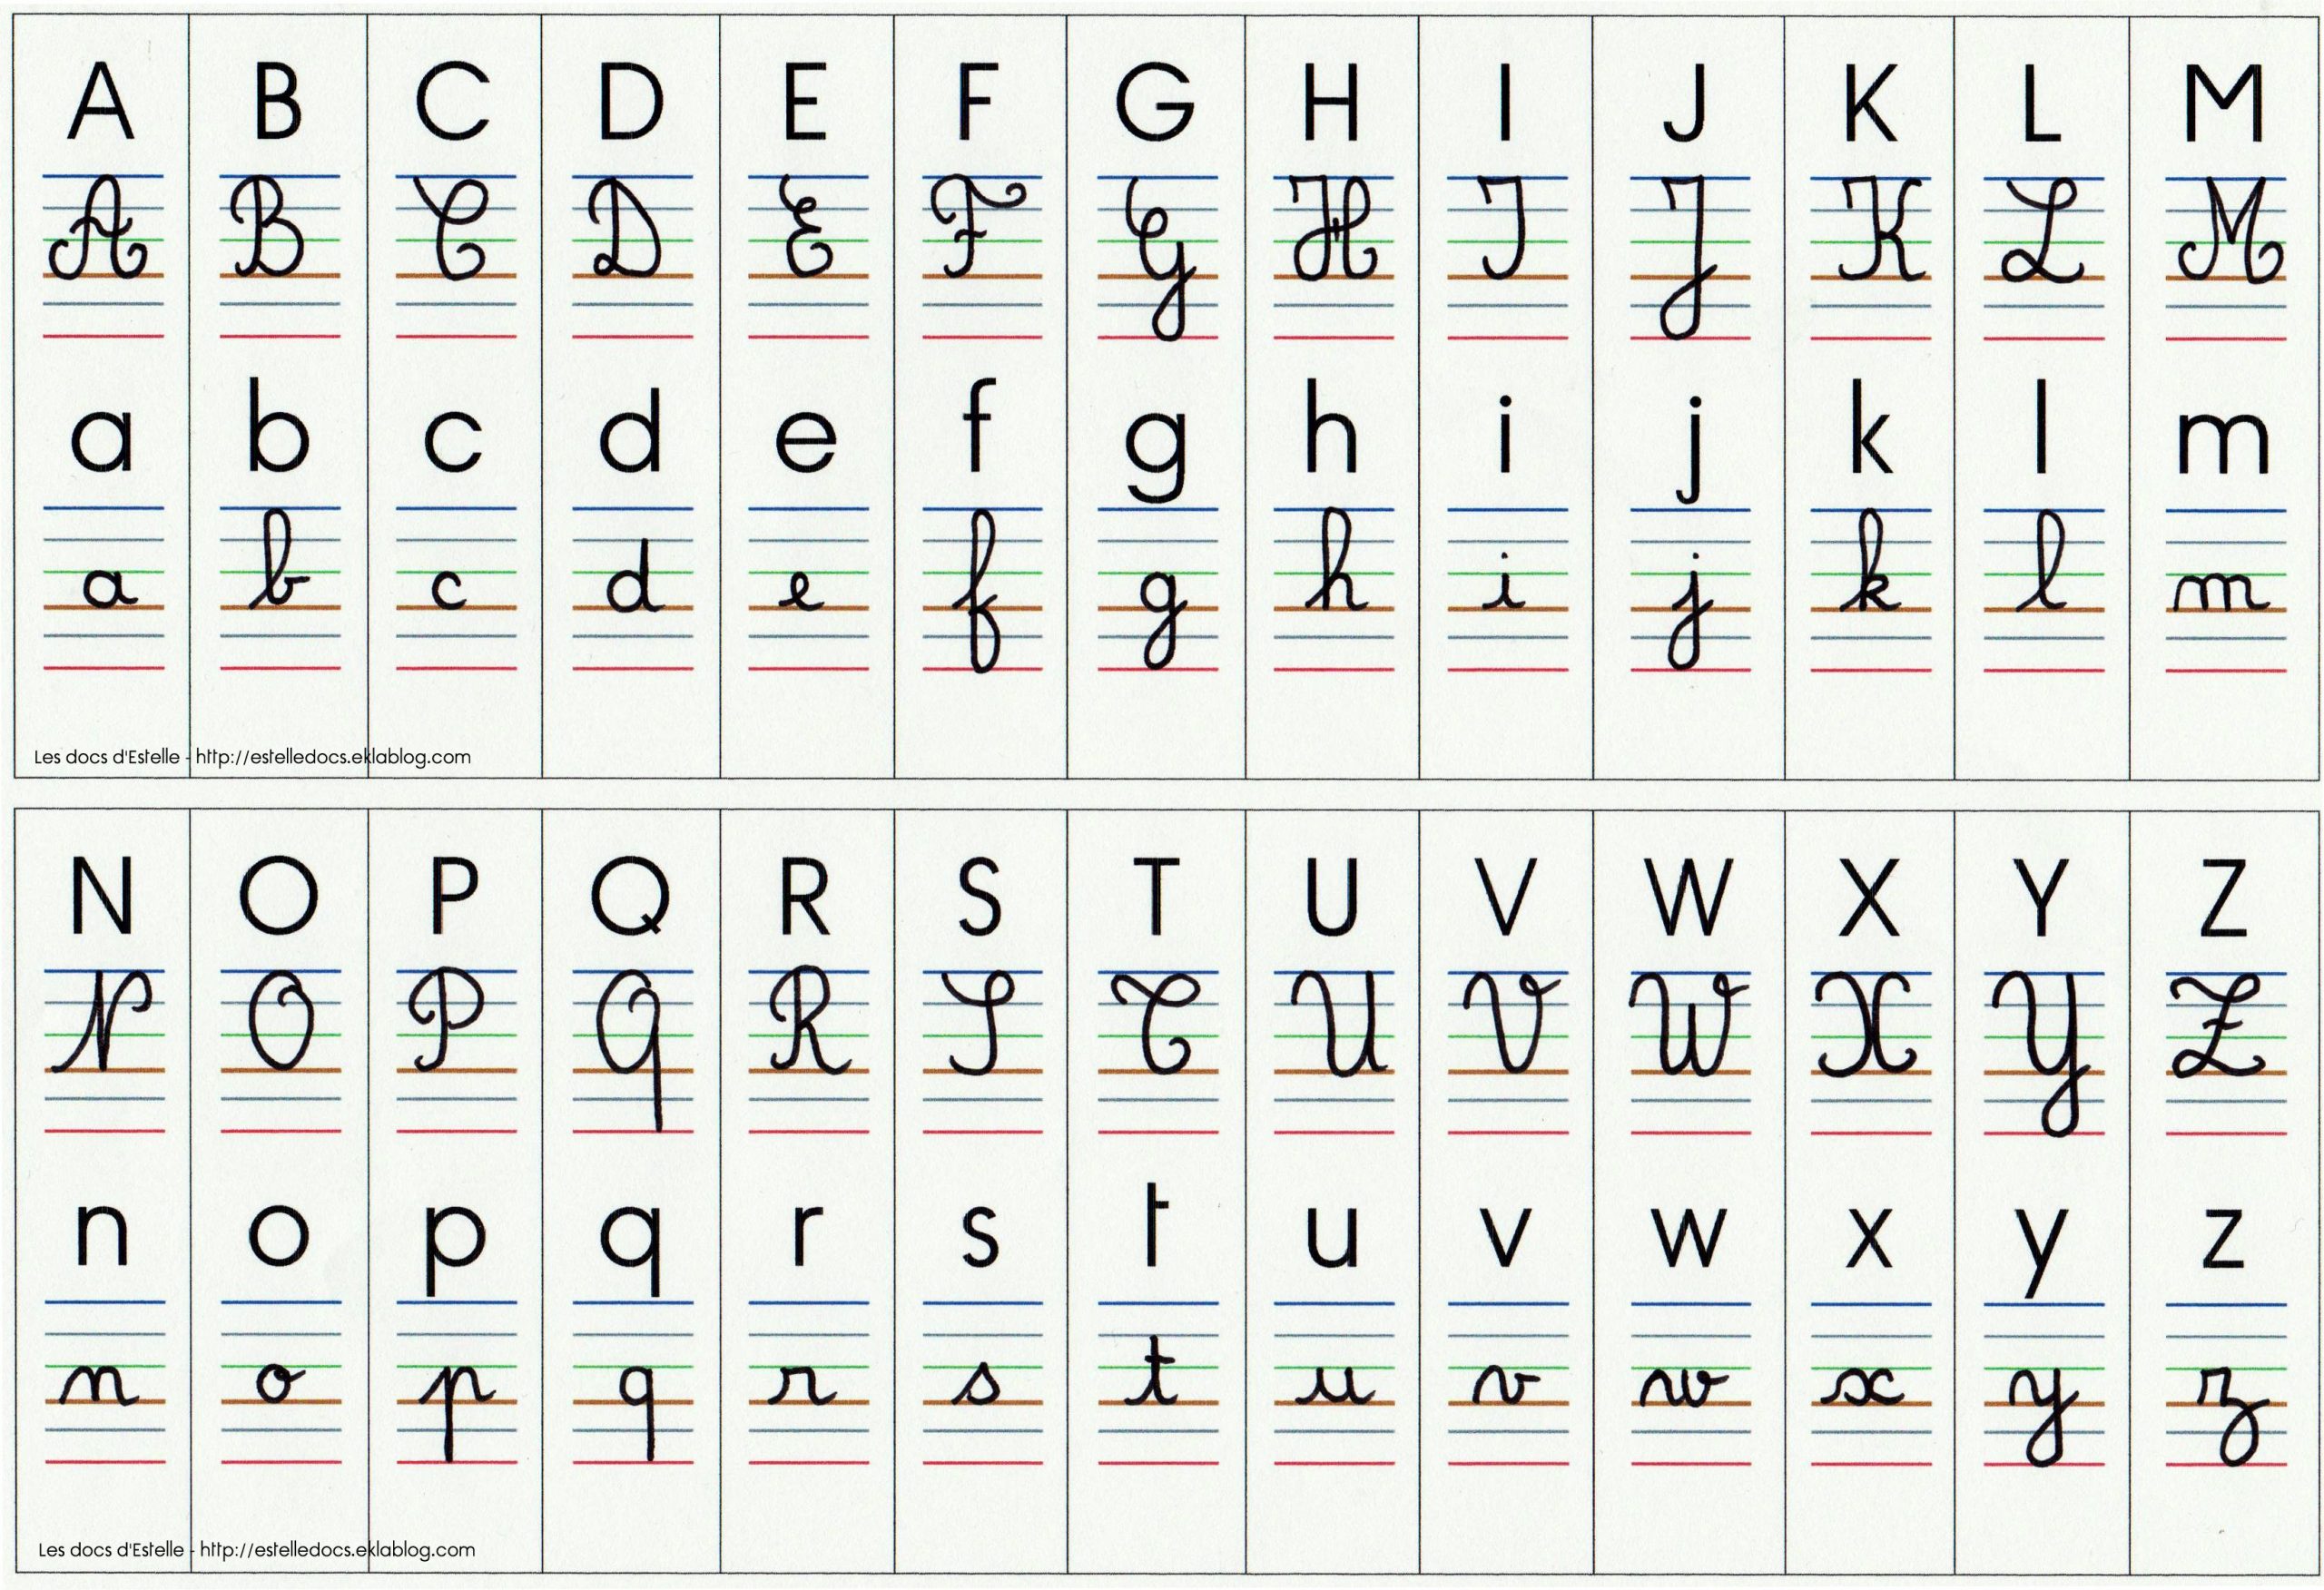 Affichage Alphabet 4 Écritures | Affichage Alphabet concernant Modèle D Alphabet 